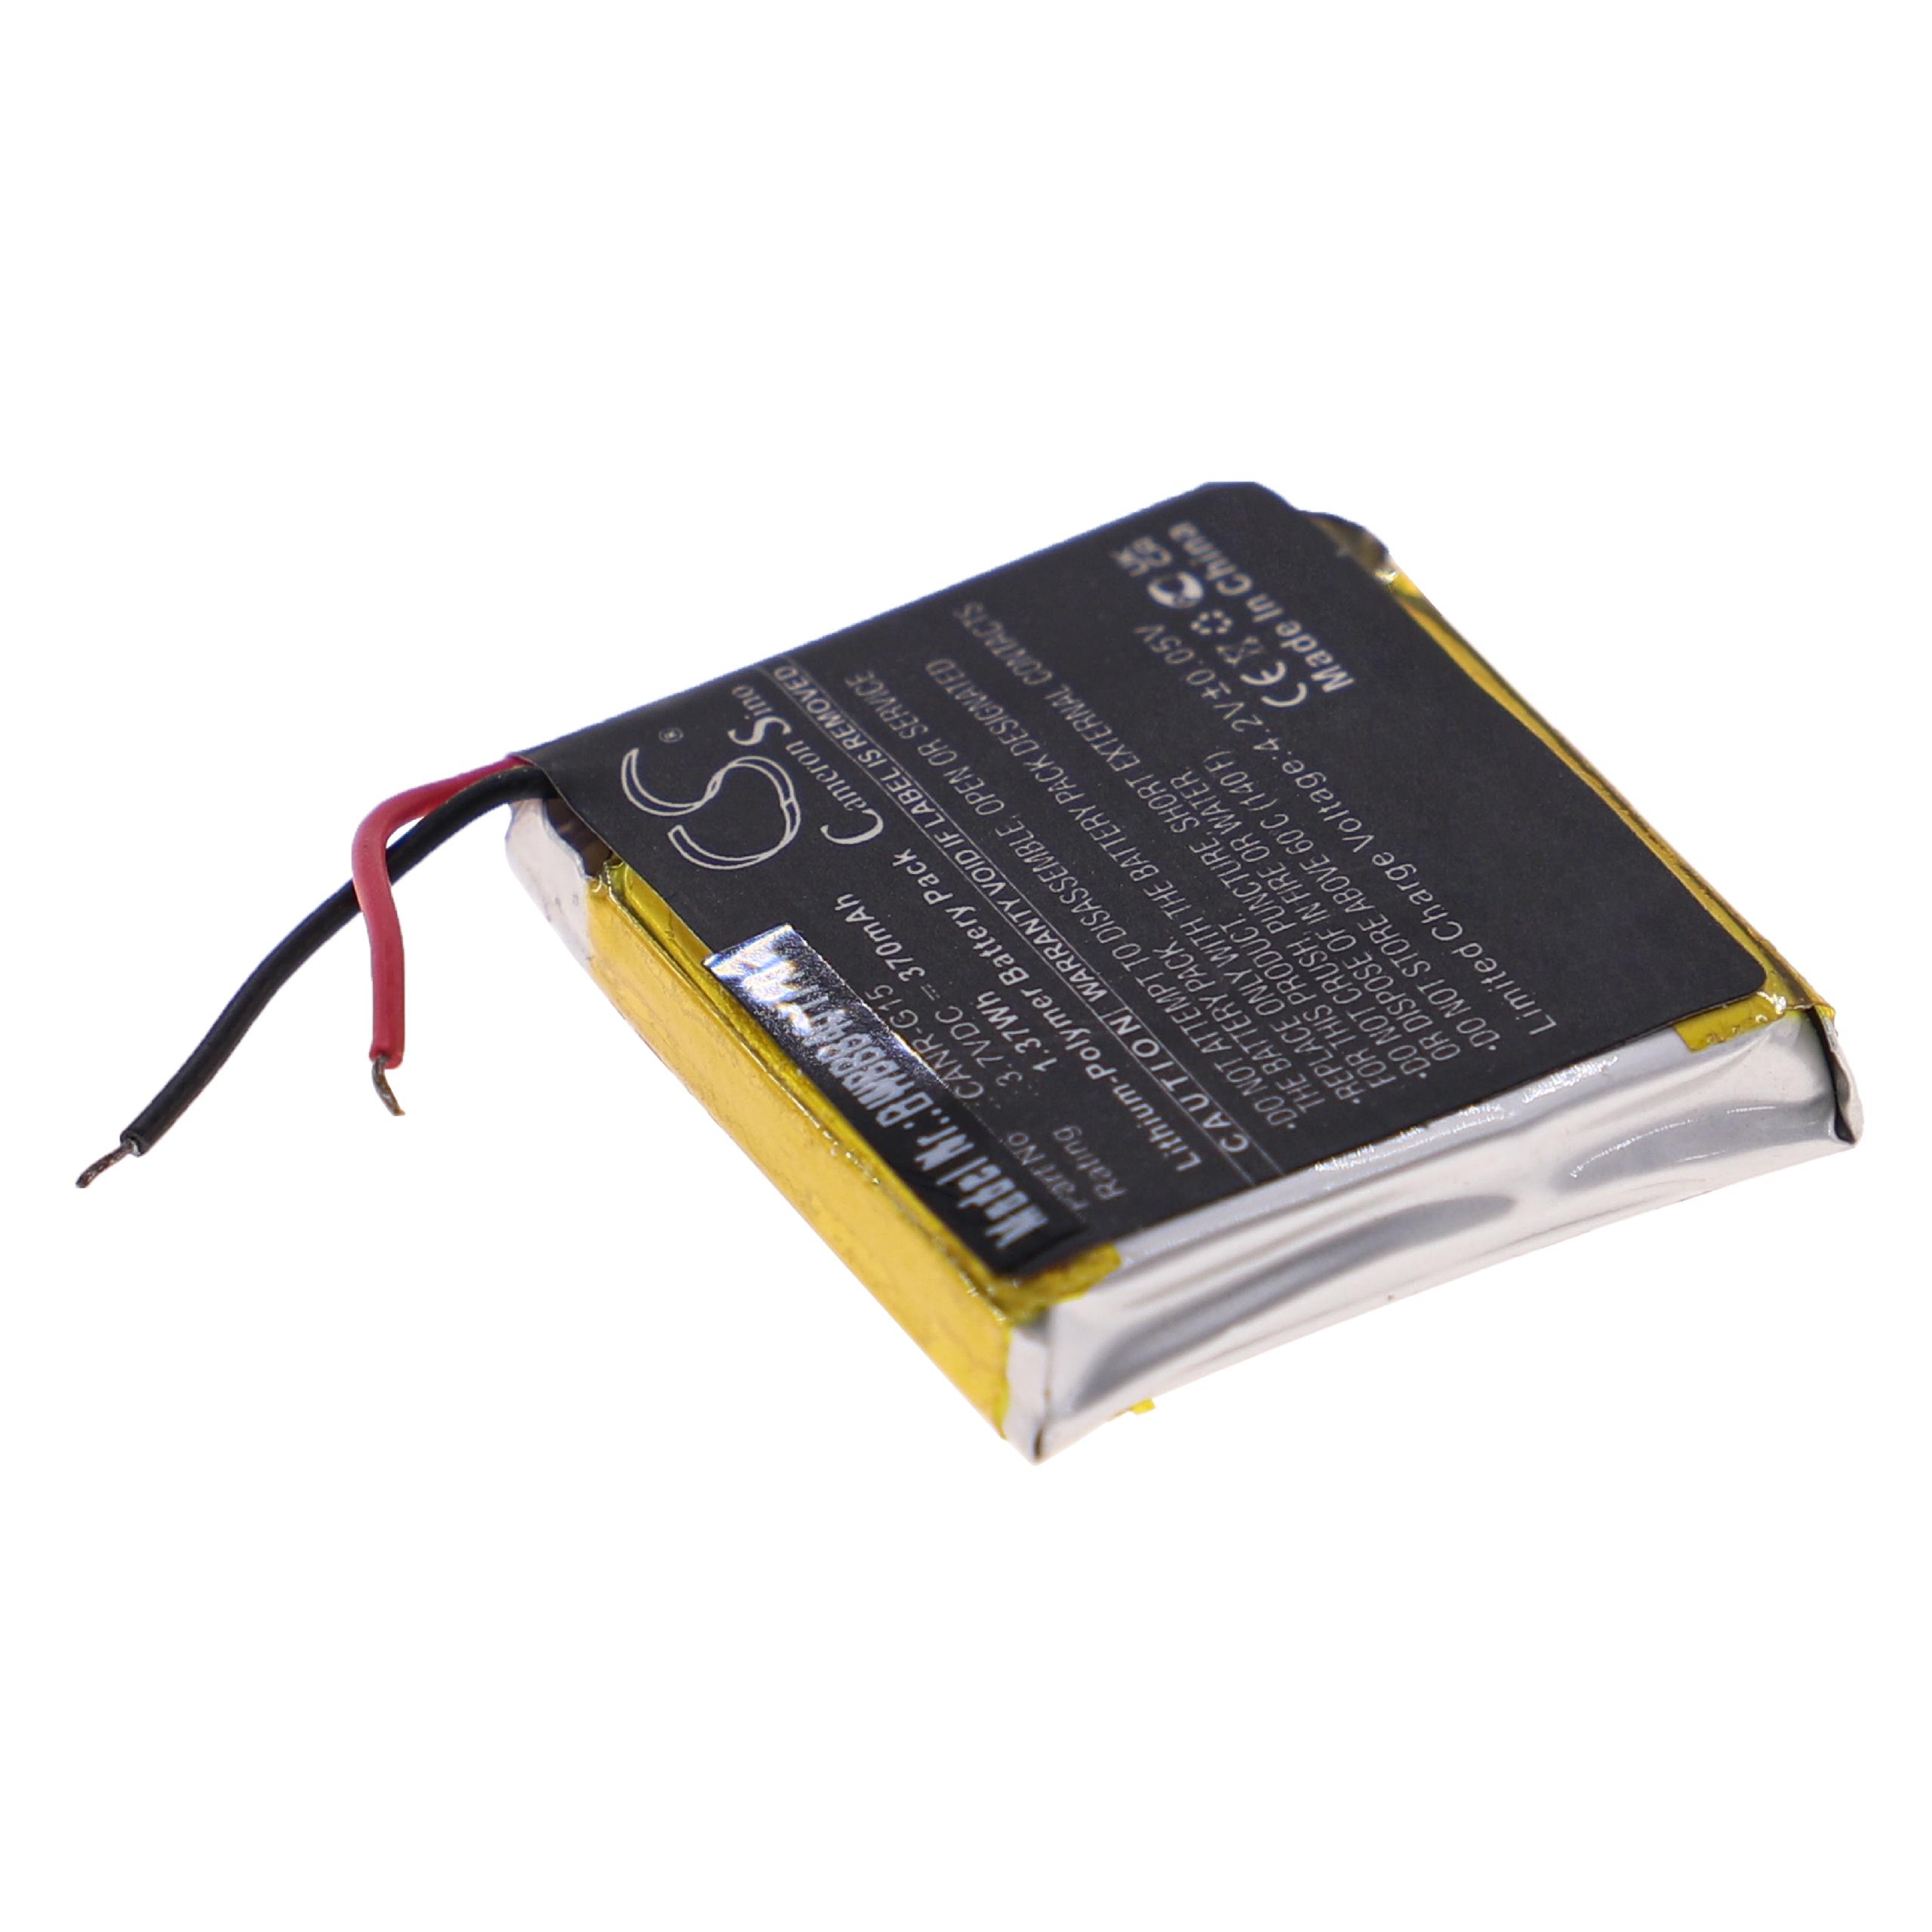 Batterie remplace Plutour CANR-G15 pour appareil photo - 370mAh 3,7V Li-polymère